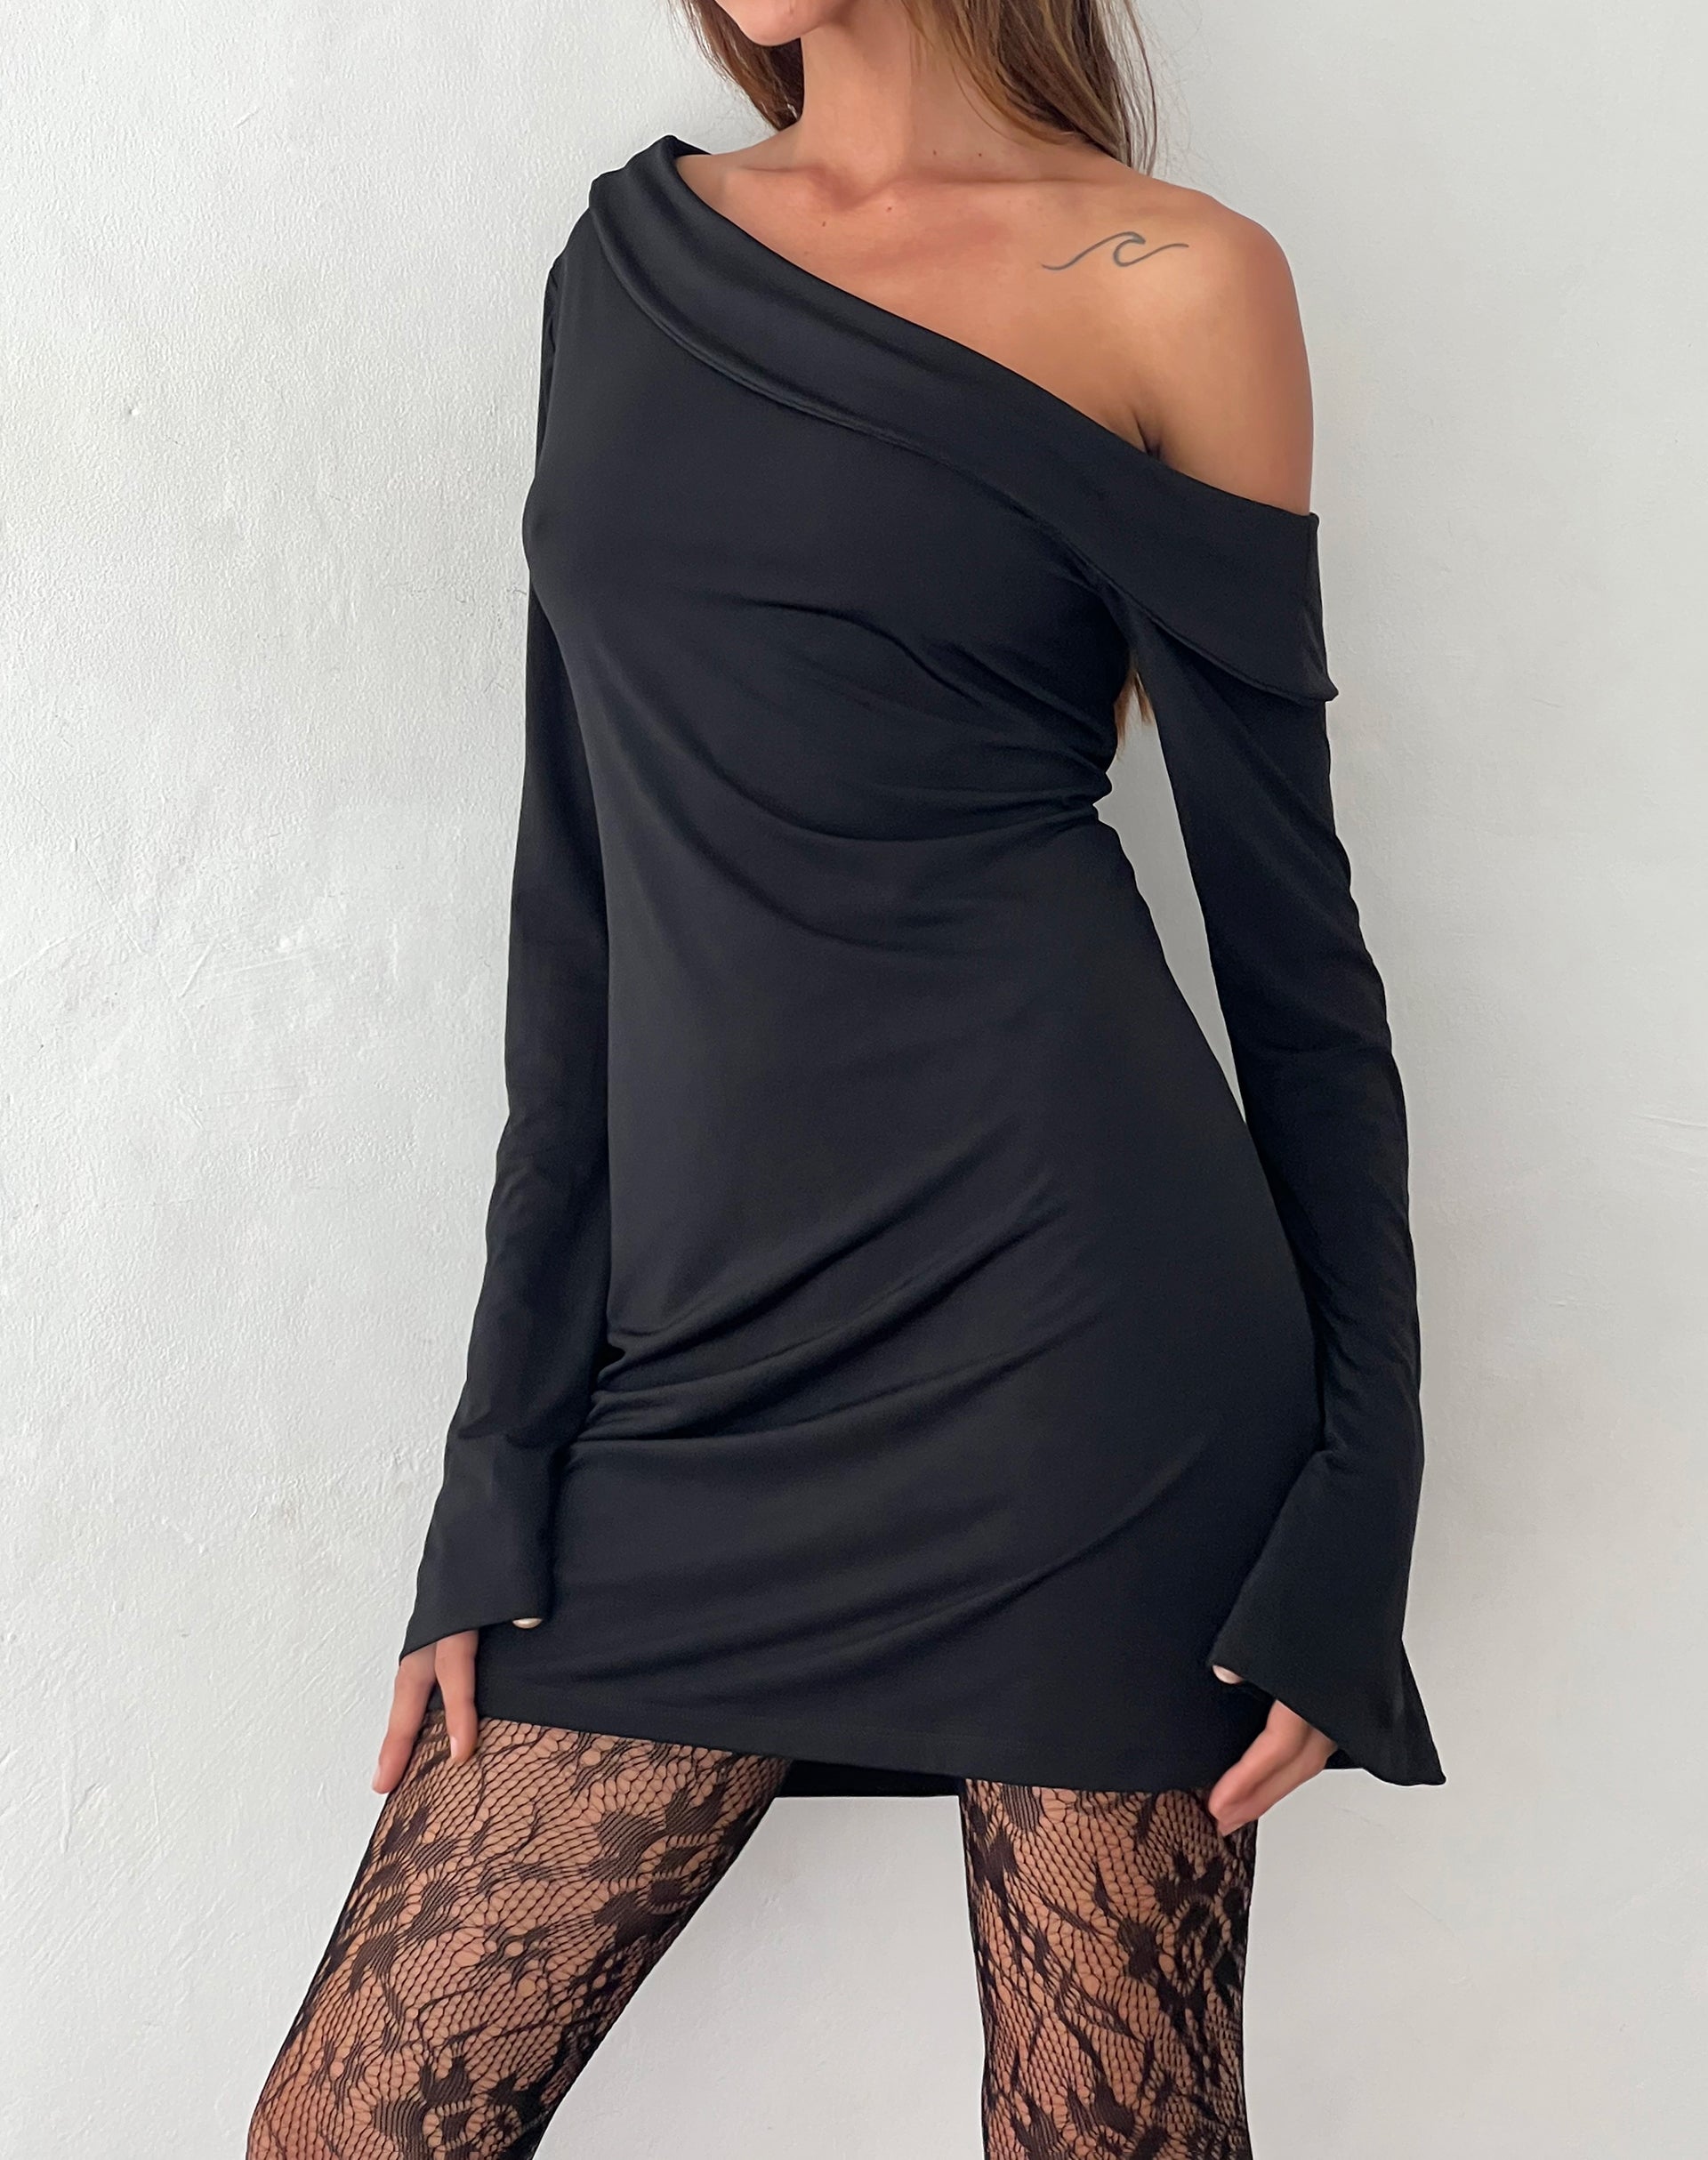 Image of Fliss Asymmetric Mini Dress in Slinky Black